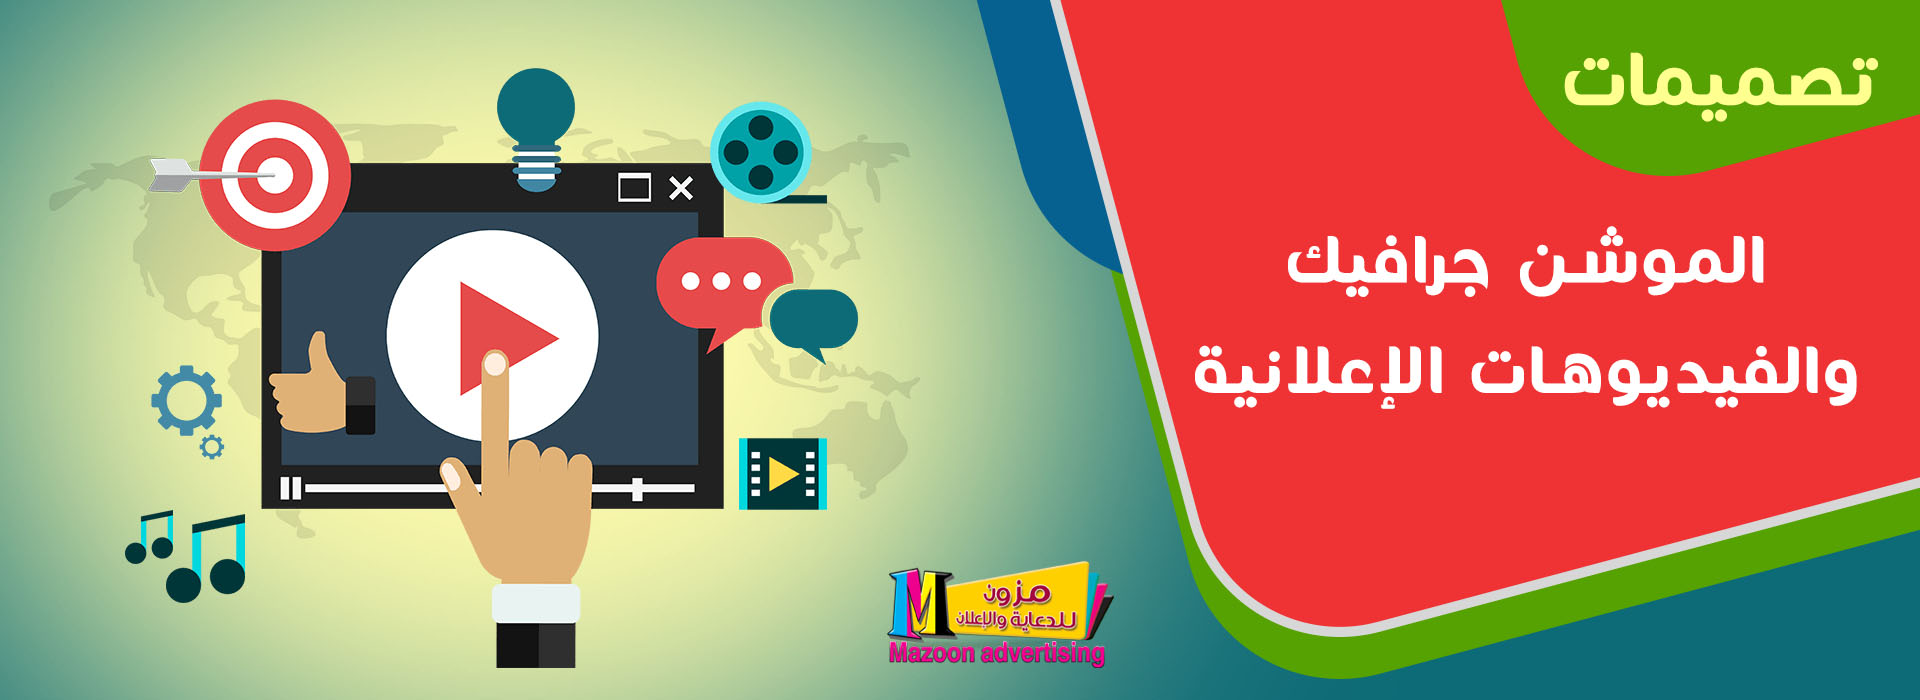 شركة برمجة و تصميم مواقع في سلطنة عمان مسقط شركة مزون